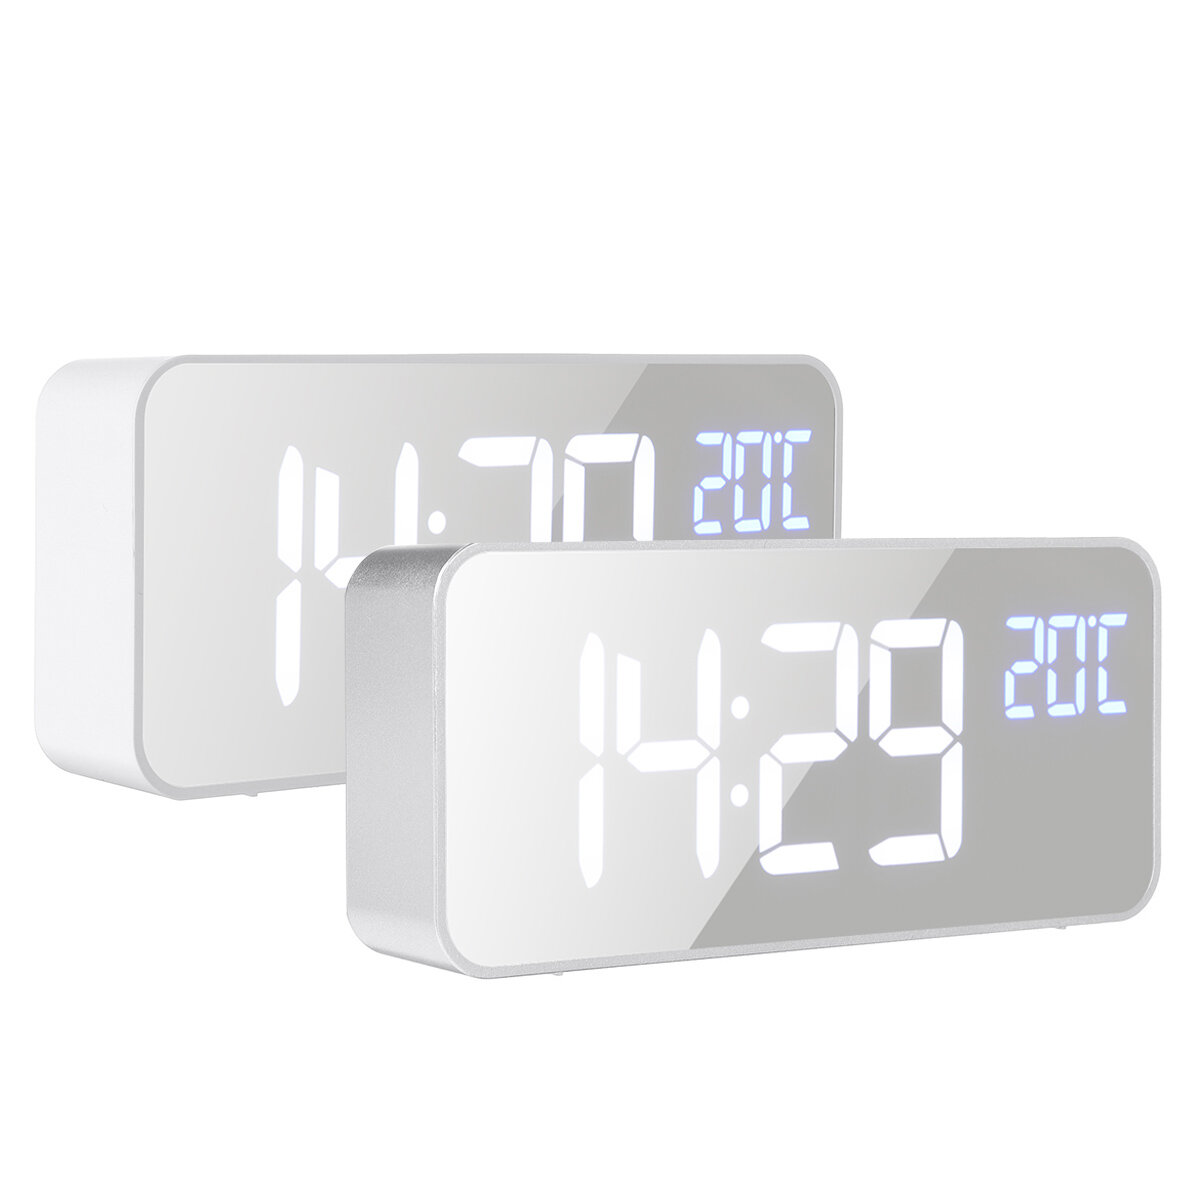 5V 1A digitale spiegelmuziek LED-klok met spraakbediening Twee sets alarmschakelaars